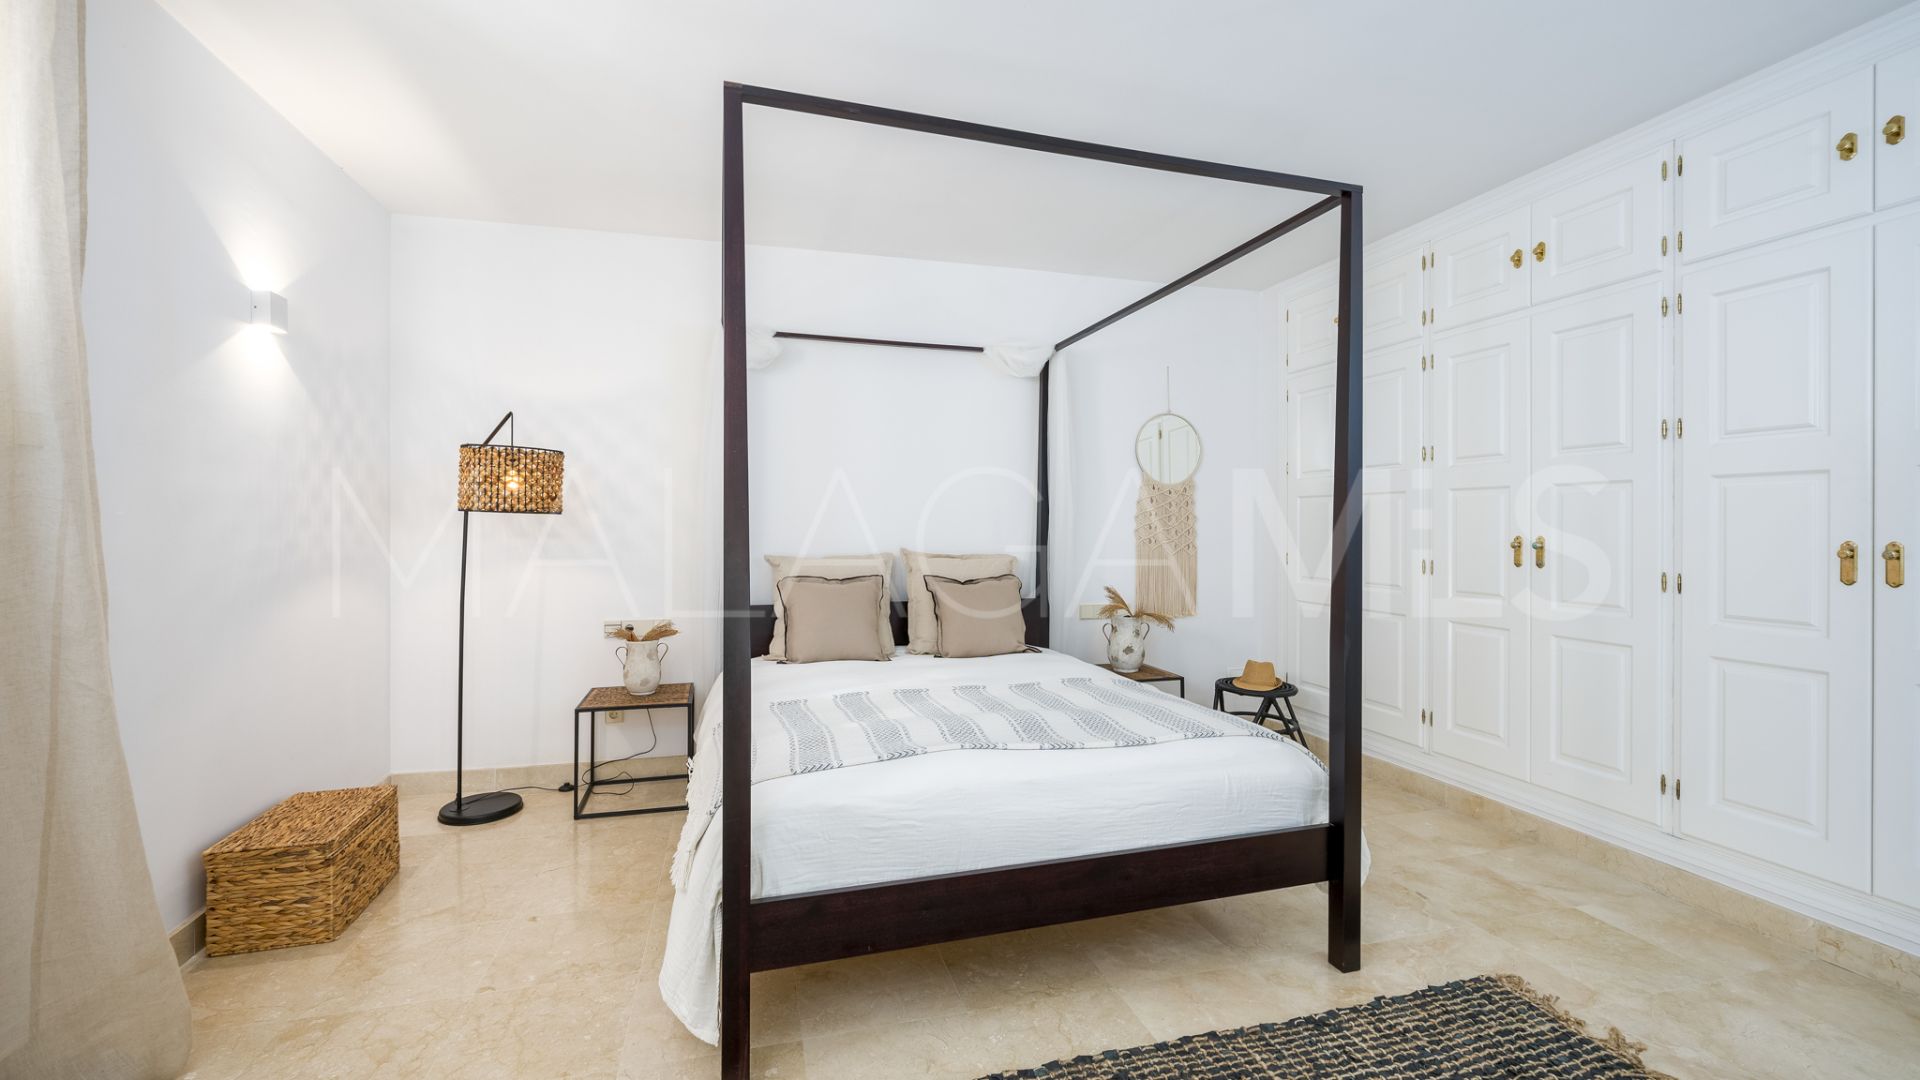 Villa de 6 bedrooms for sale in Los Monteros